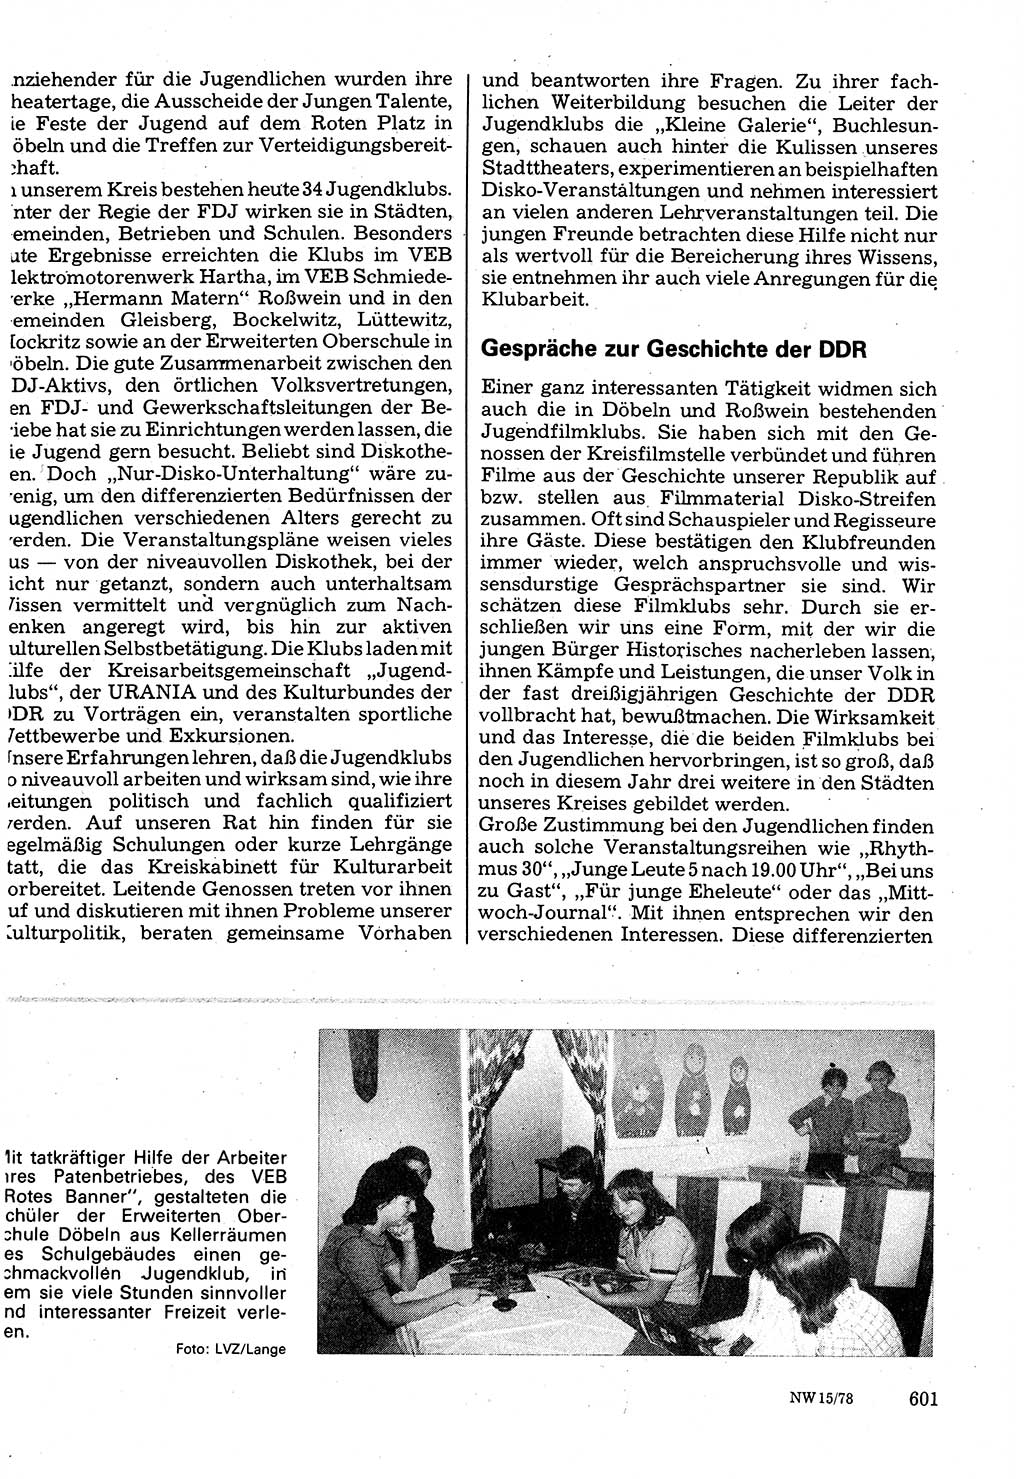 Neuer Weg (NW), Organ des Zentralkomitees (ZK) der SED (Sozialistische Einheitspartei Deutschlands) für Fragen des Parteilebens, 33. Jahrgang [Deutsche Demokratische Republik (DDR)] 1978, Seite 601 (NW ZK SED DDR 1978, S. 601)